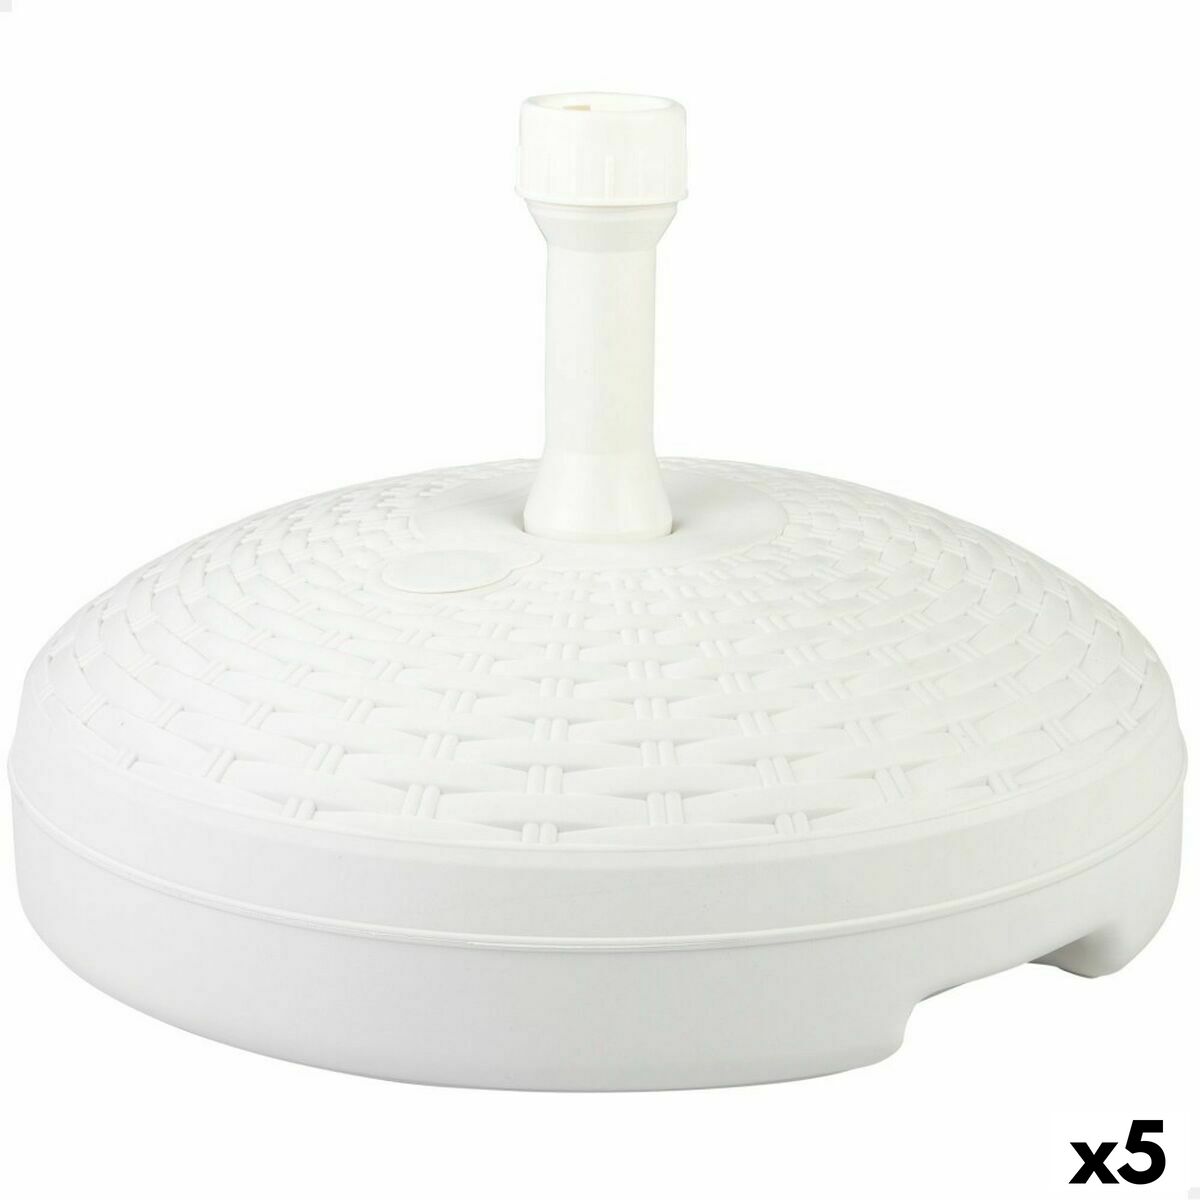 Base per Ombrellone Aktive Bianco Plastica 45 x 30 x 45 cm (5 Unità)